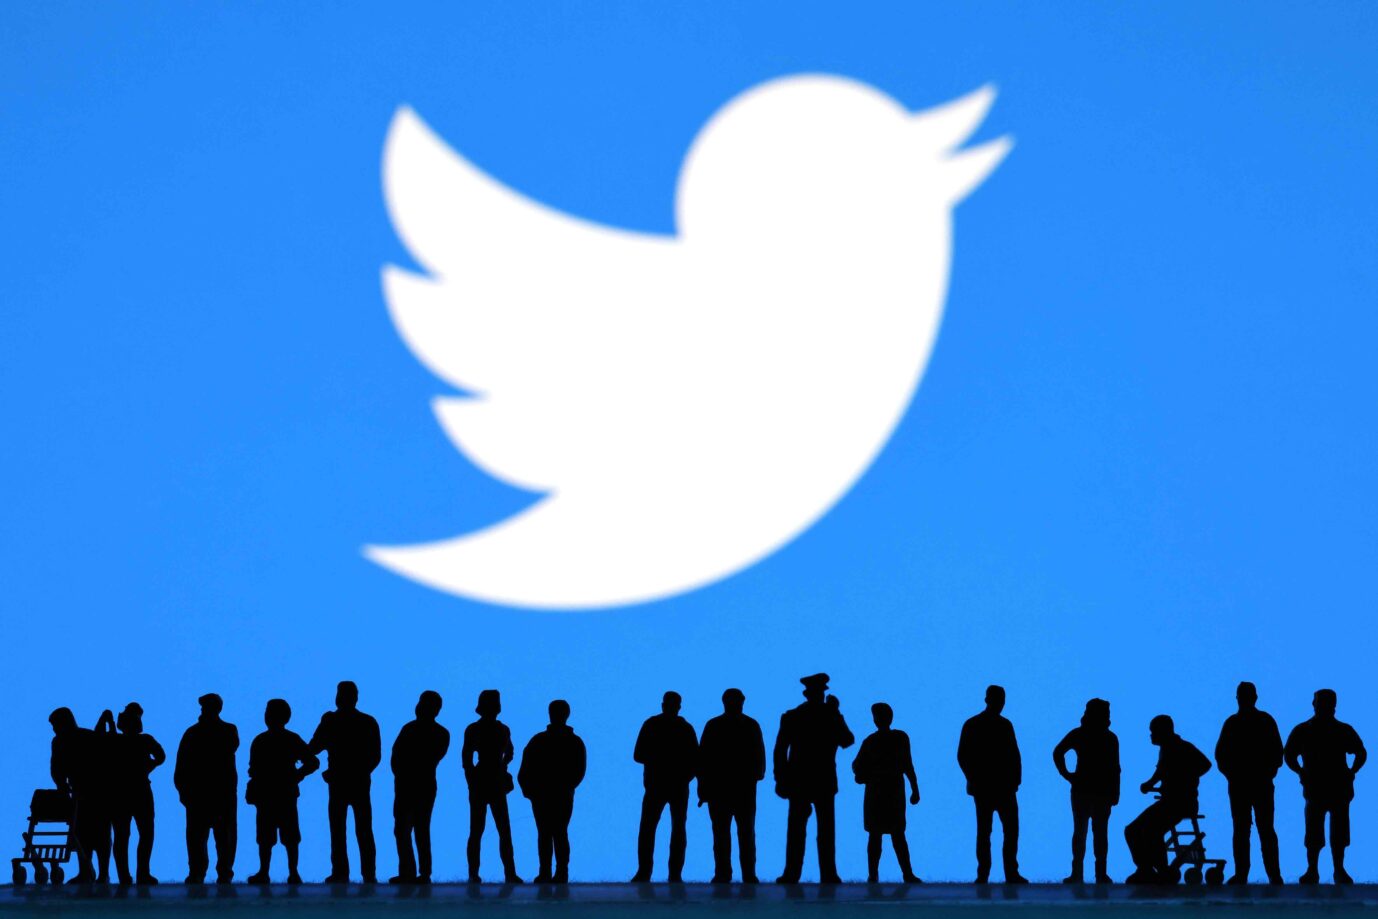 Internetzensoren, die Zensur im Internet üben: dank der Twitter-Files wissen wir, welche NGOs dahinter stecken